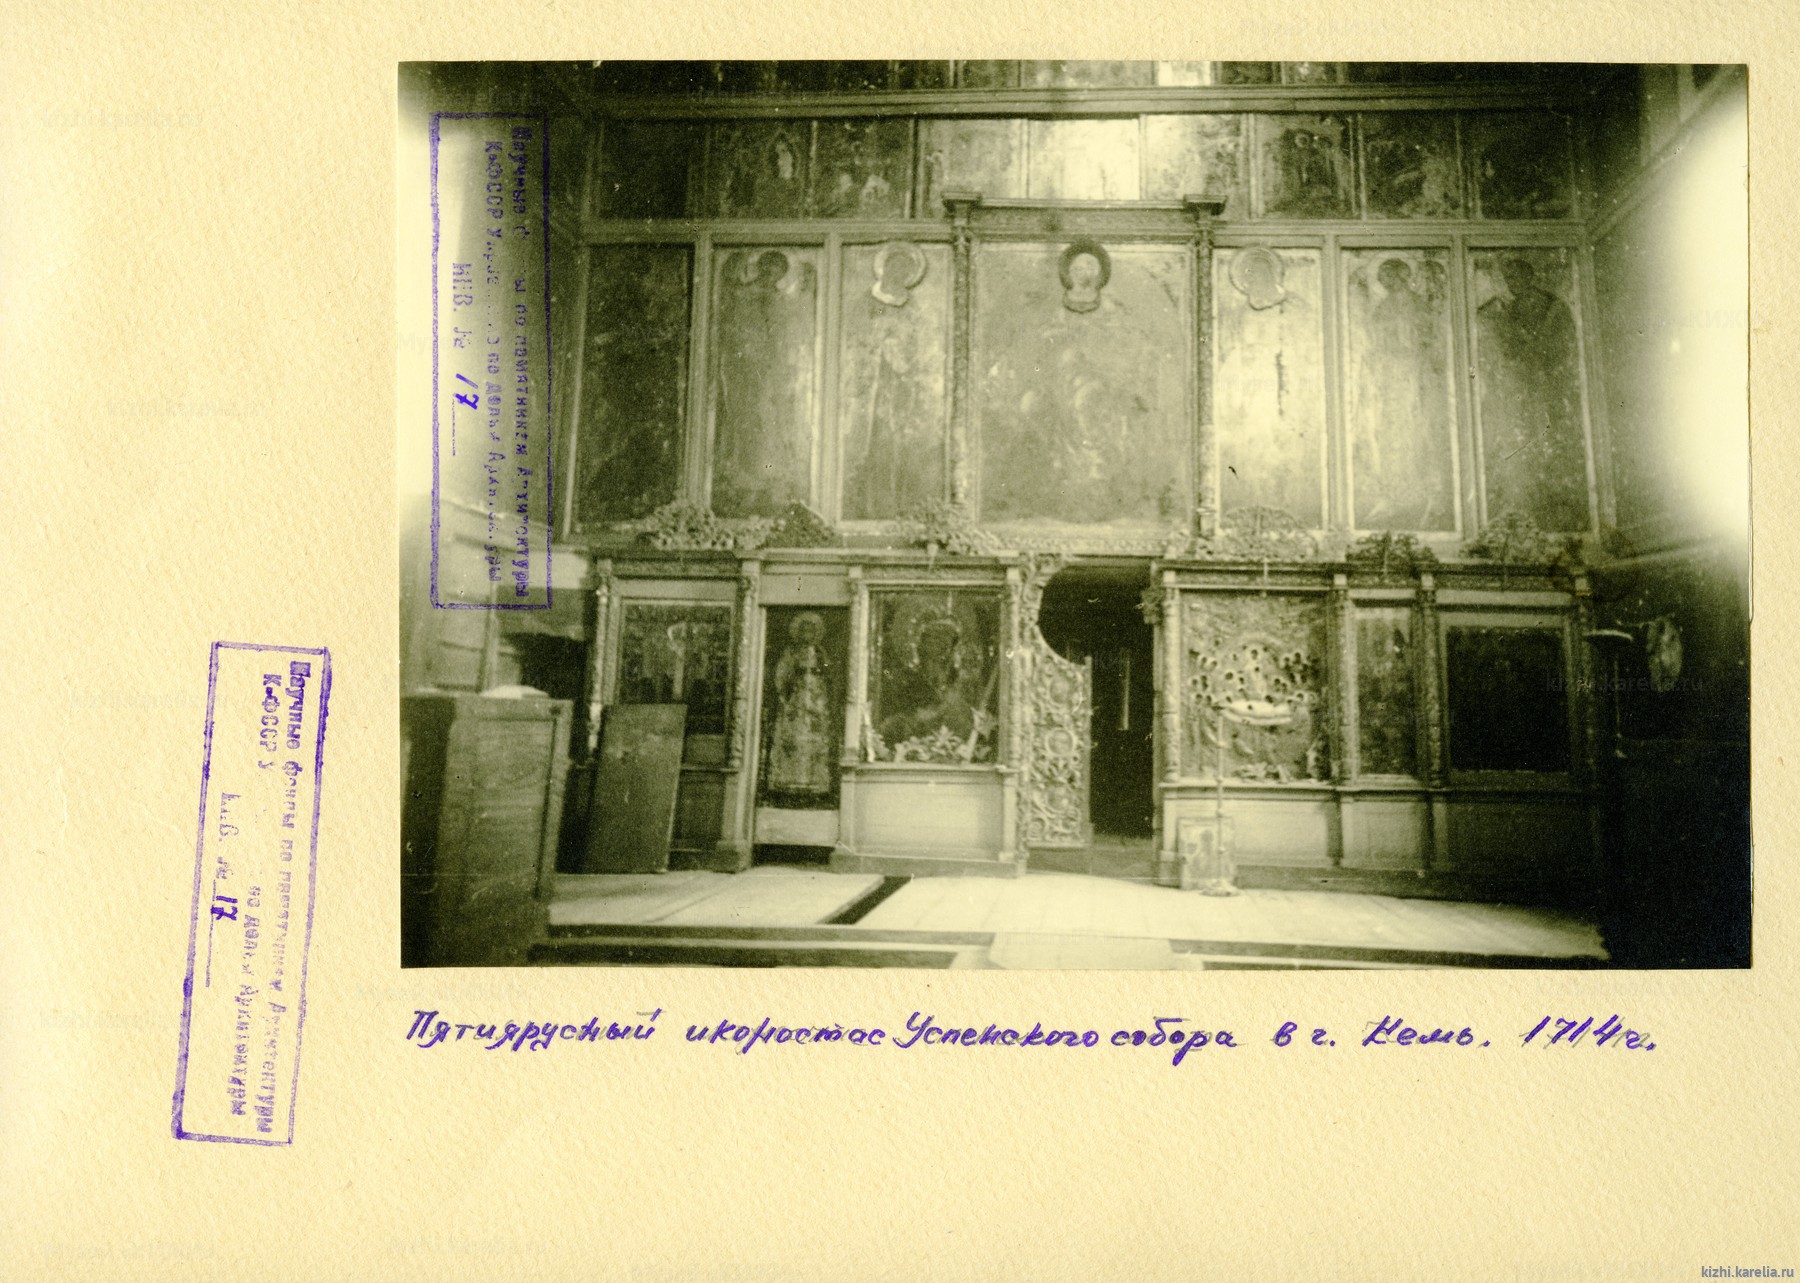 Успенский собор, г. Кемь. Фрагмент иконостаса